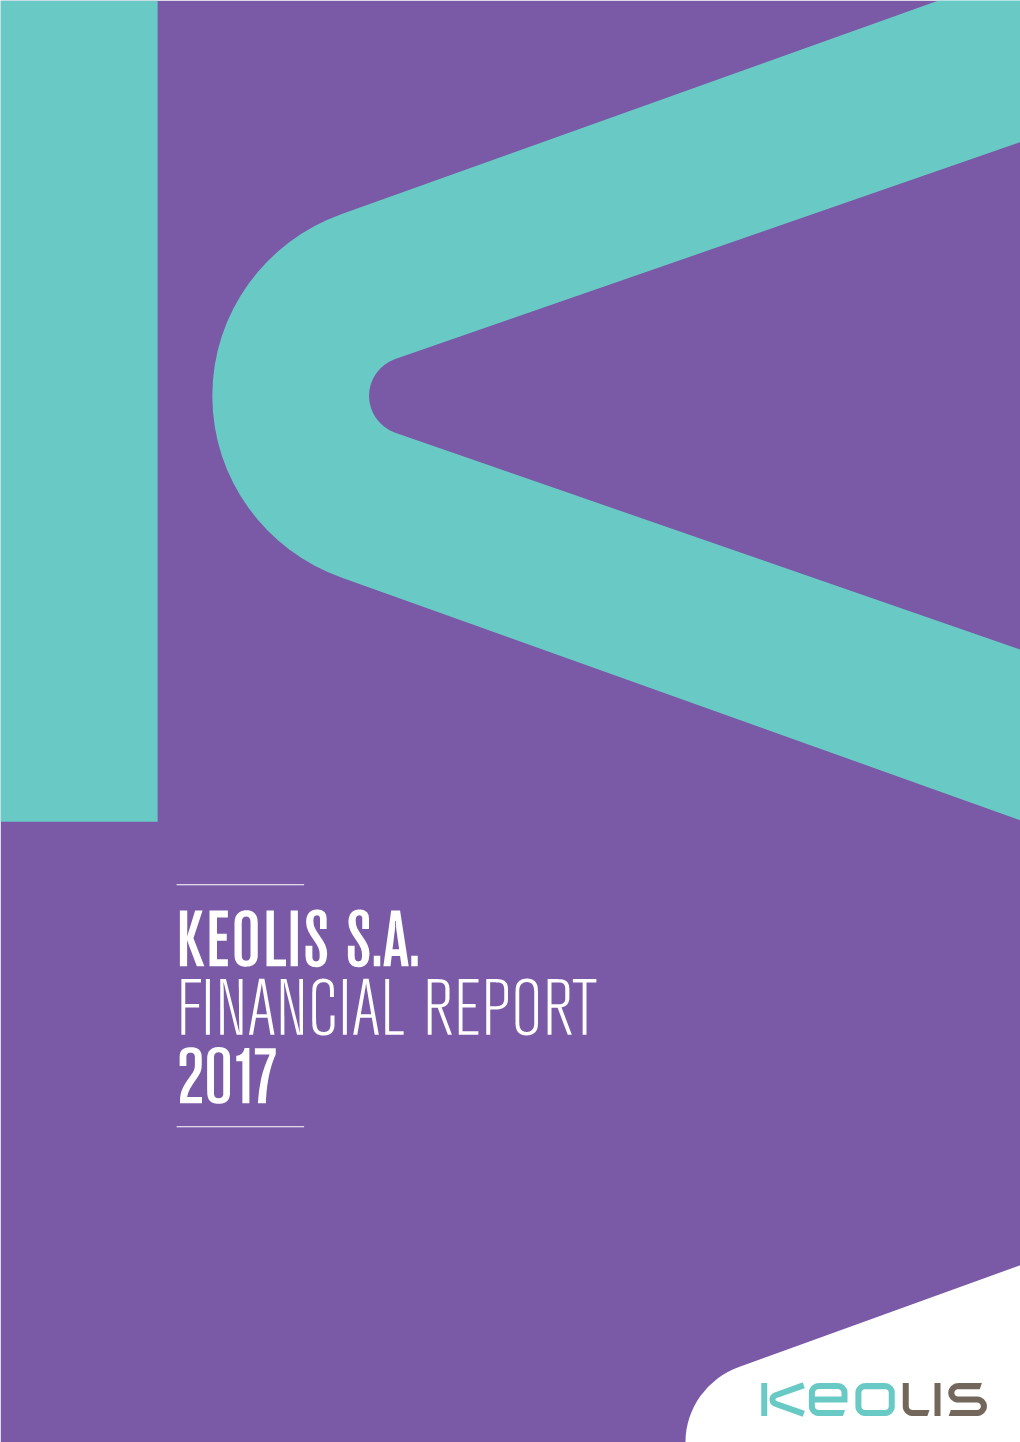 Keolis S.A. Financial Report 2017 Contents